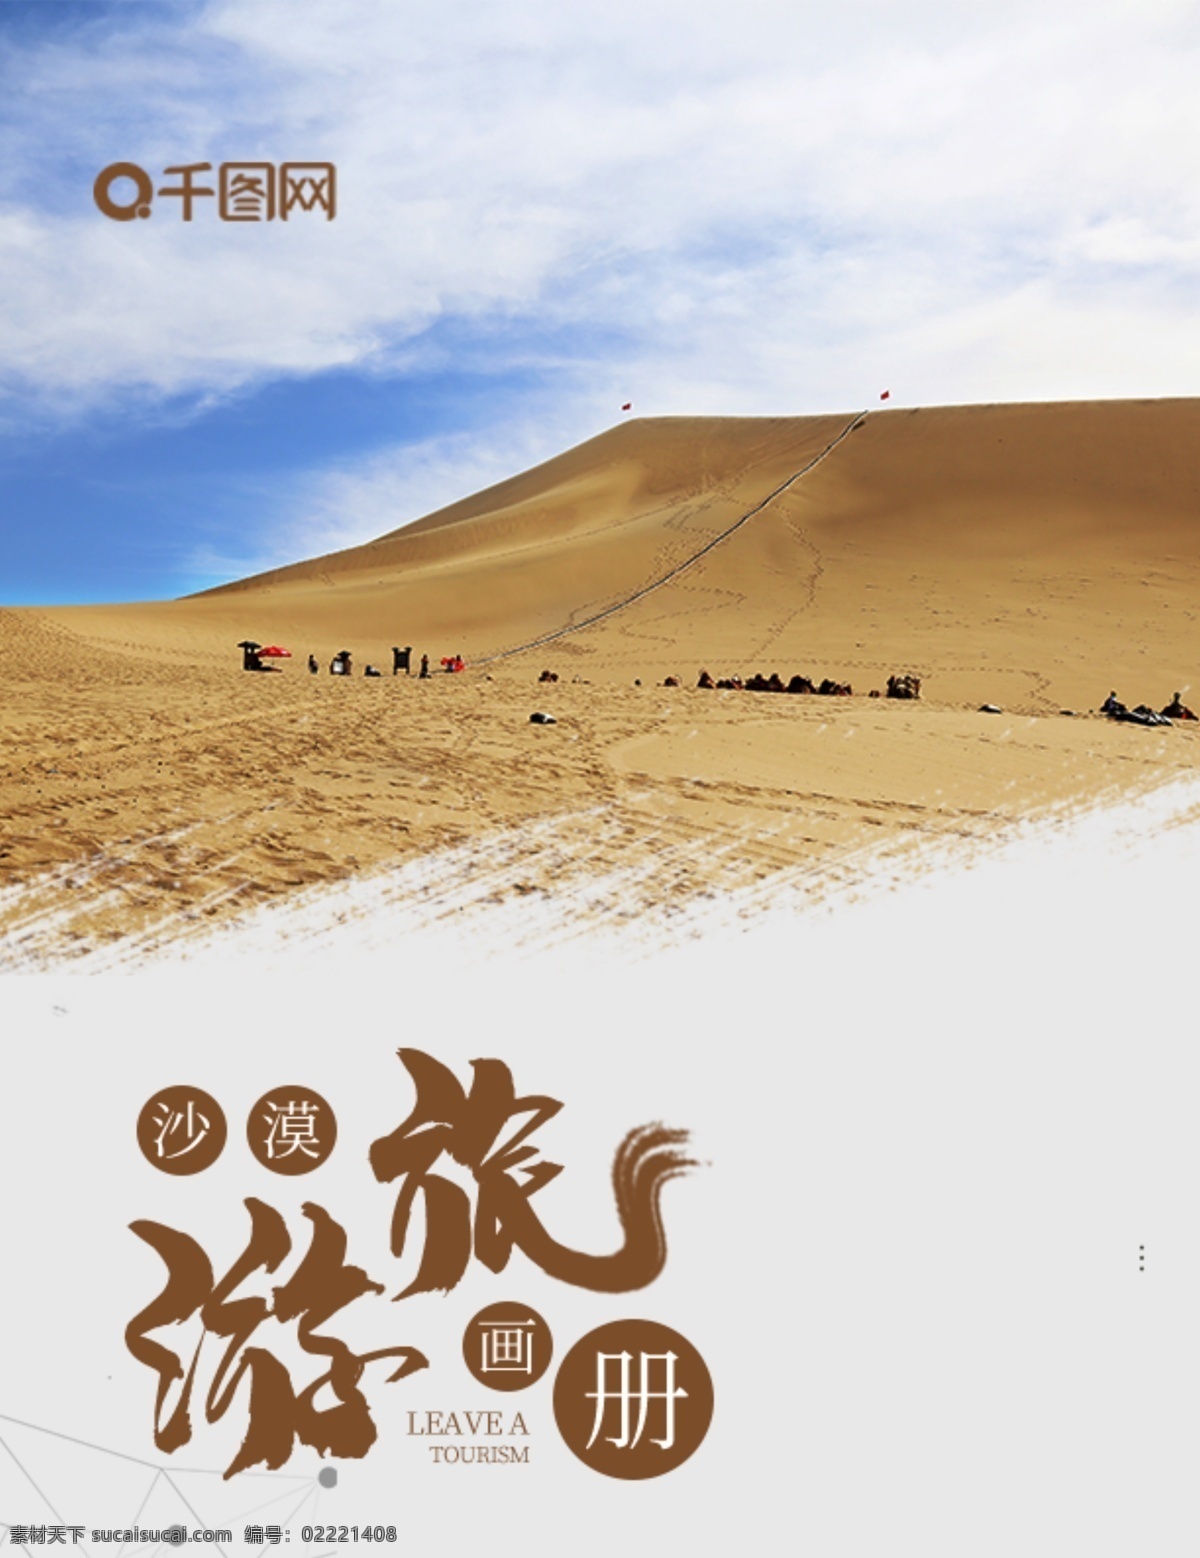 大气 沙漠 戈壁 旅游 画册 相册 影集 中国风